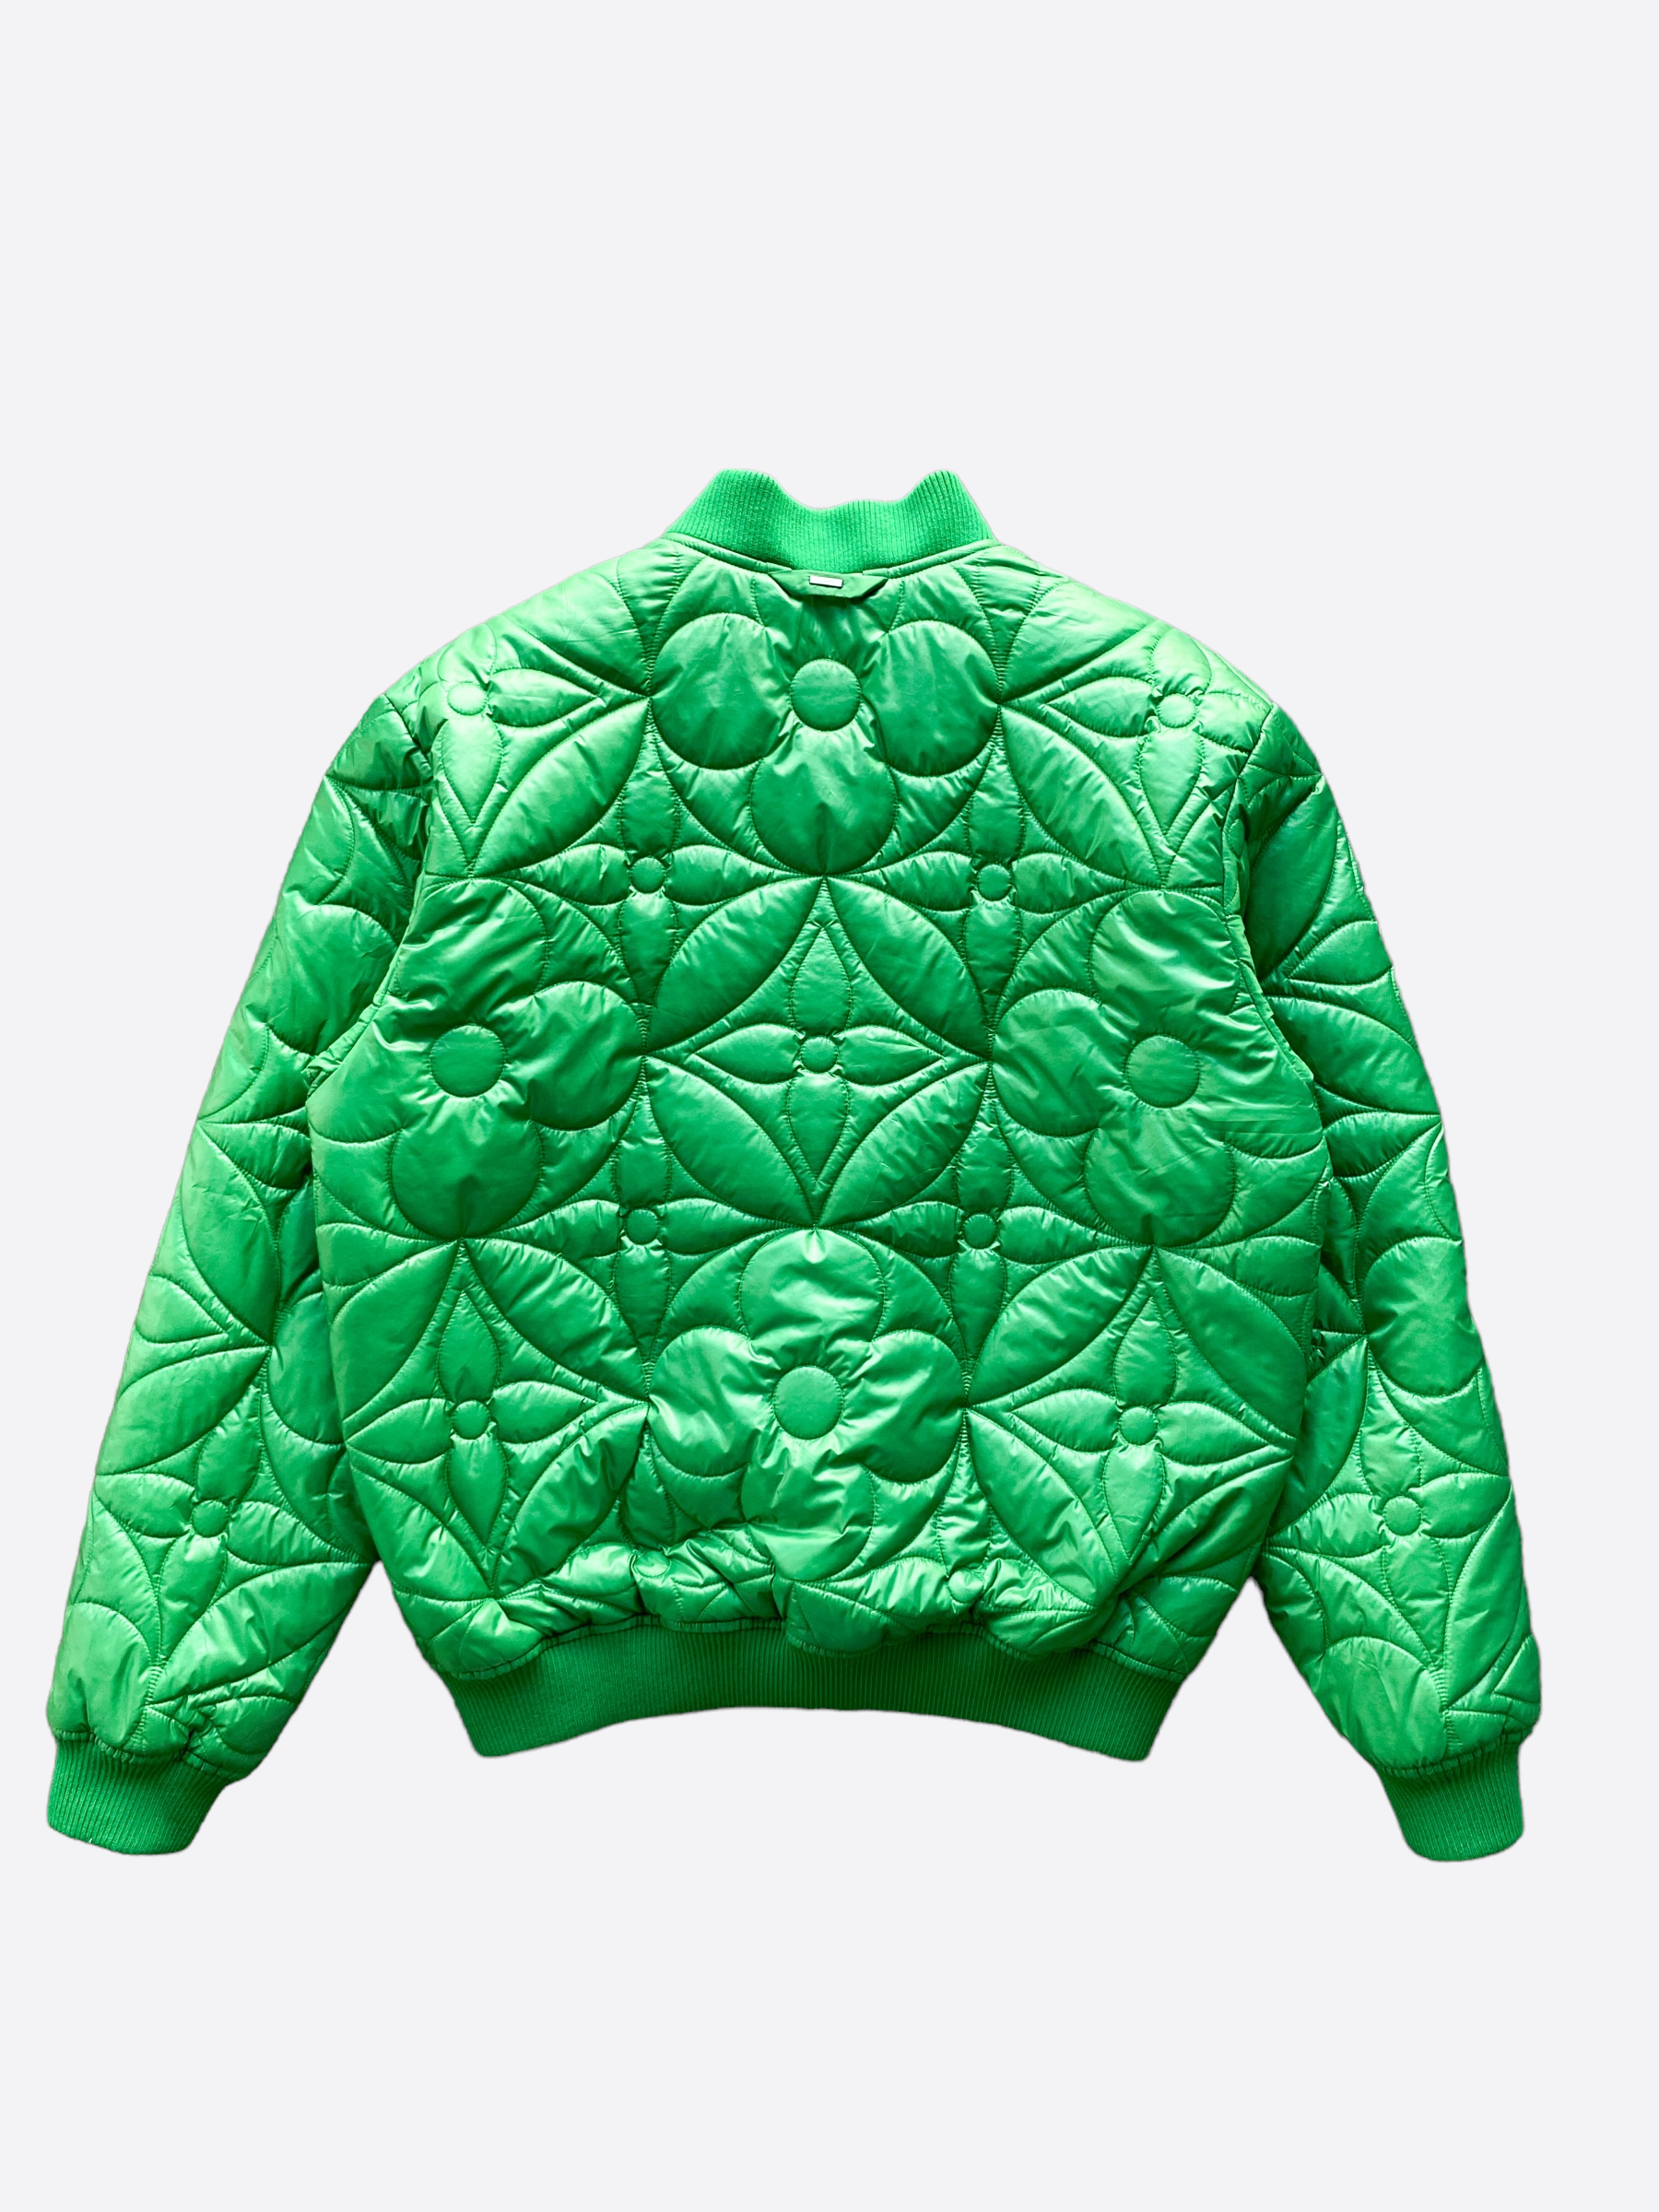 Velvet jacket Louis Vuitton Green size S International in Velvet  28410691